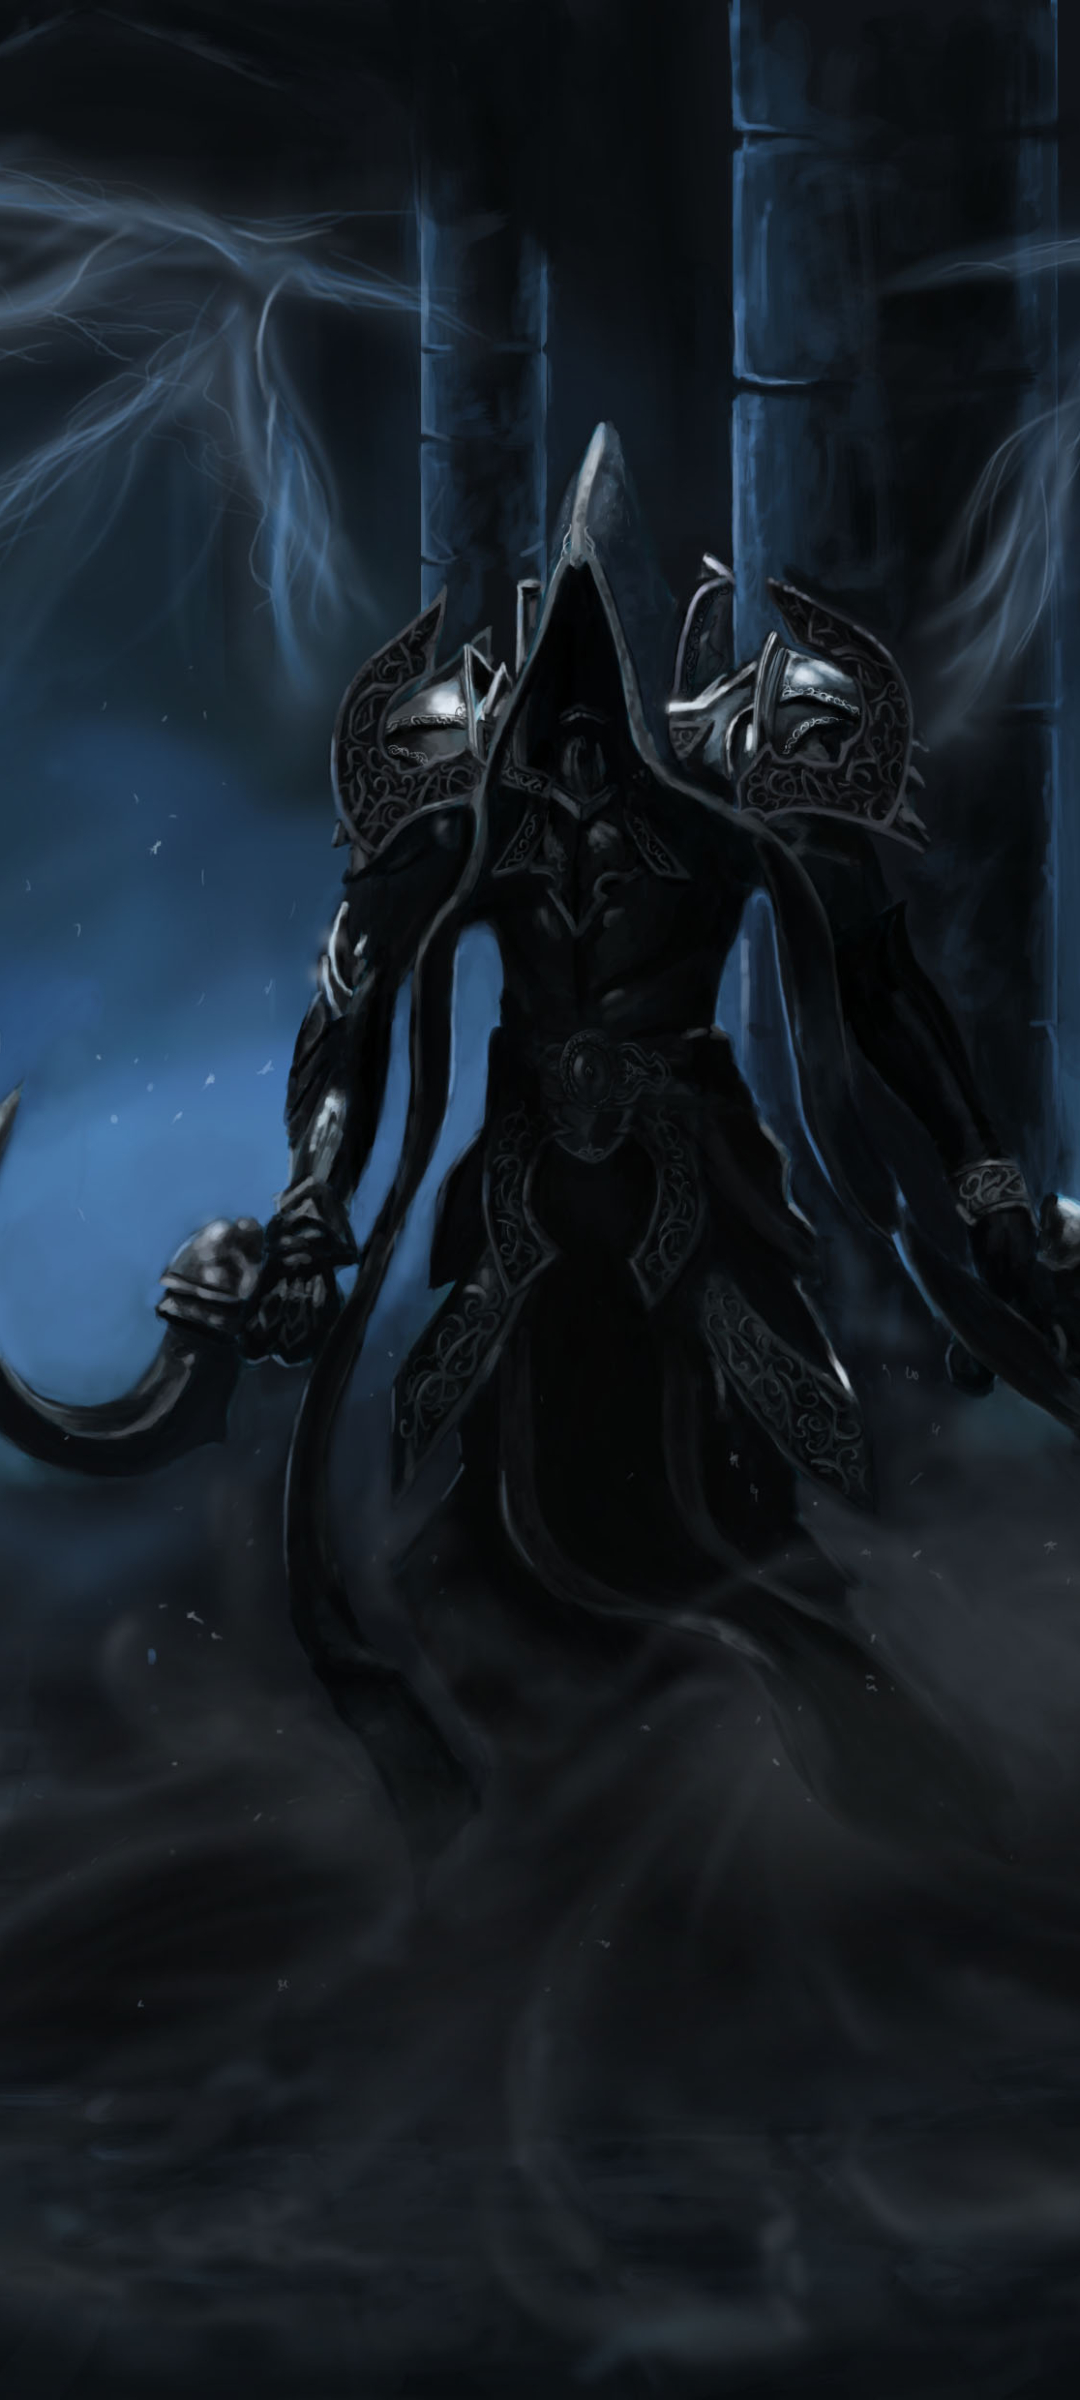 Diablo III: Reaper Of Souls Phone Wallpaper by x-Celebril-x